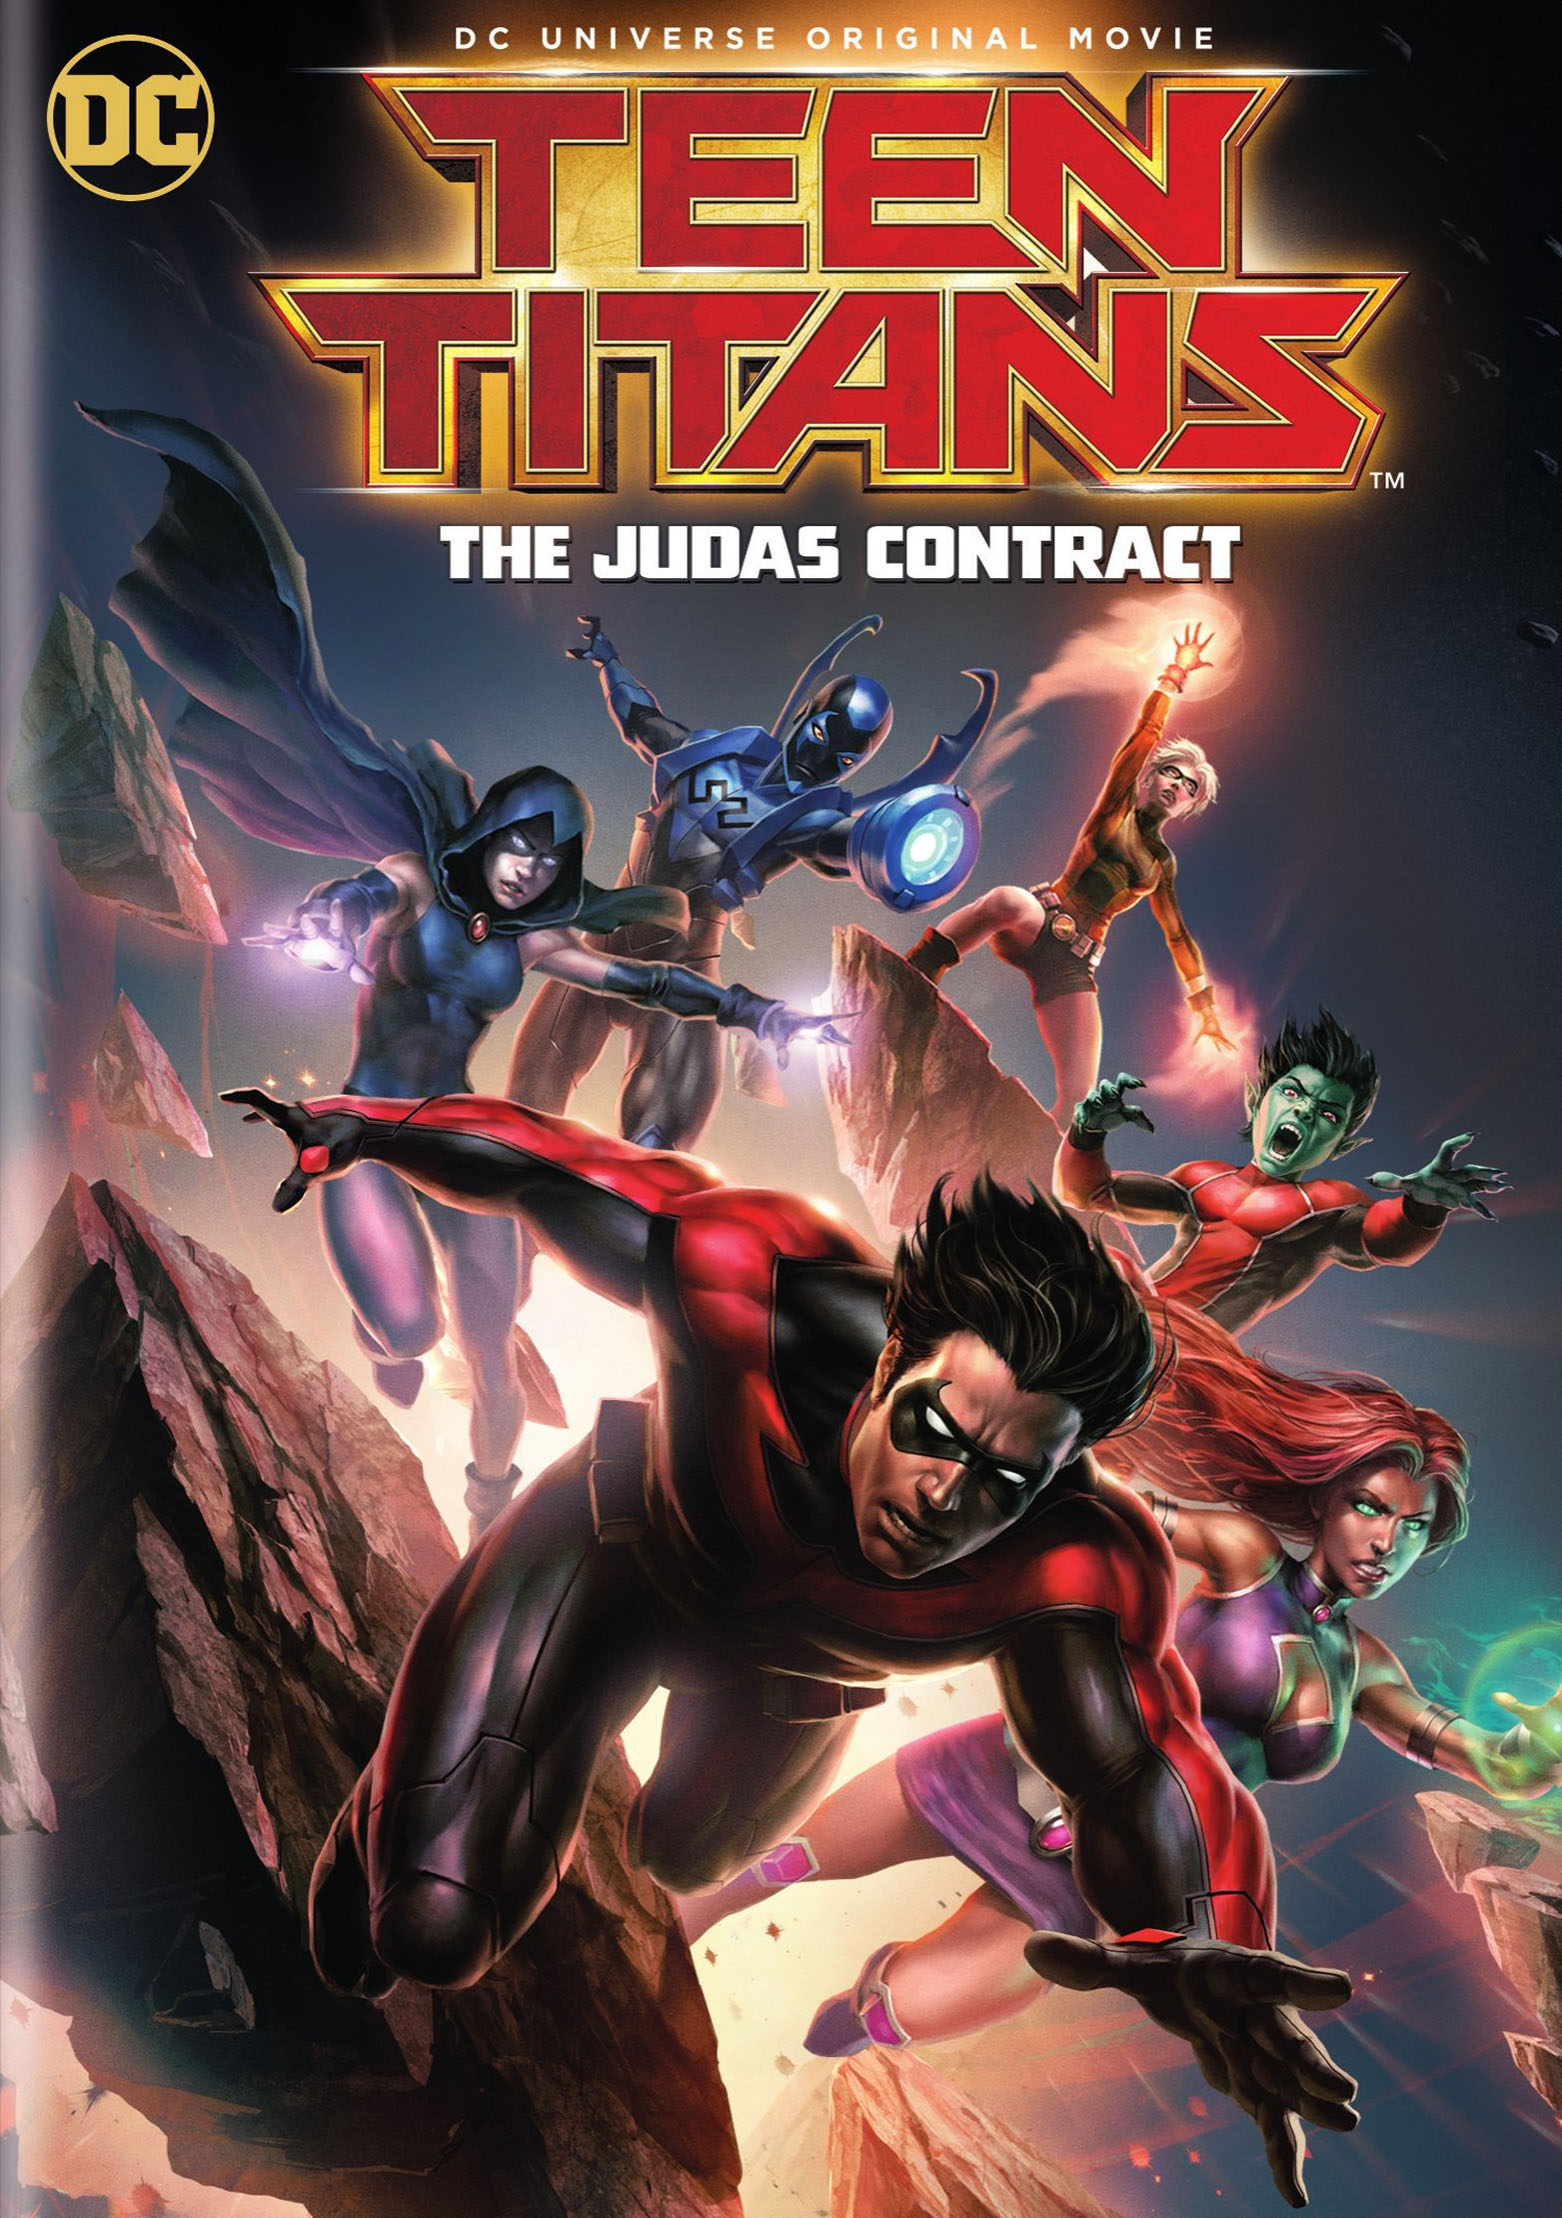 Teen Titans: The Judas Contract [DVD] [2017] - Best Buy